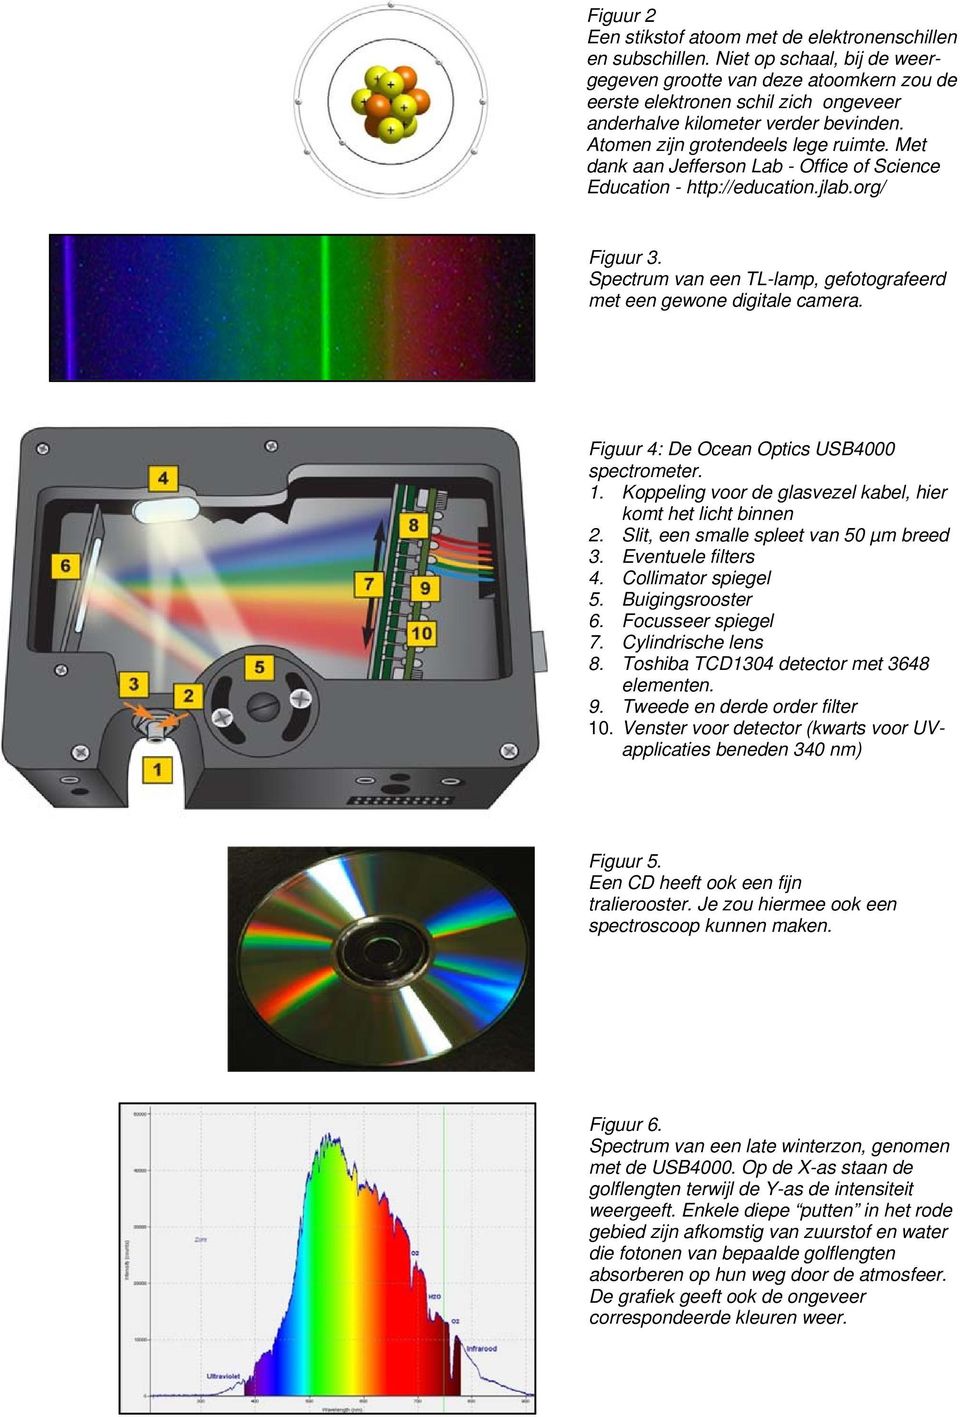 Met dank aan Jefferson Lab - Office of Science Education - http://education.jlab.org/ Figuur 3. Spectrum van een TL-lamp, gefotografeerd met een gewone digitale camera.